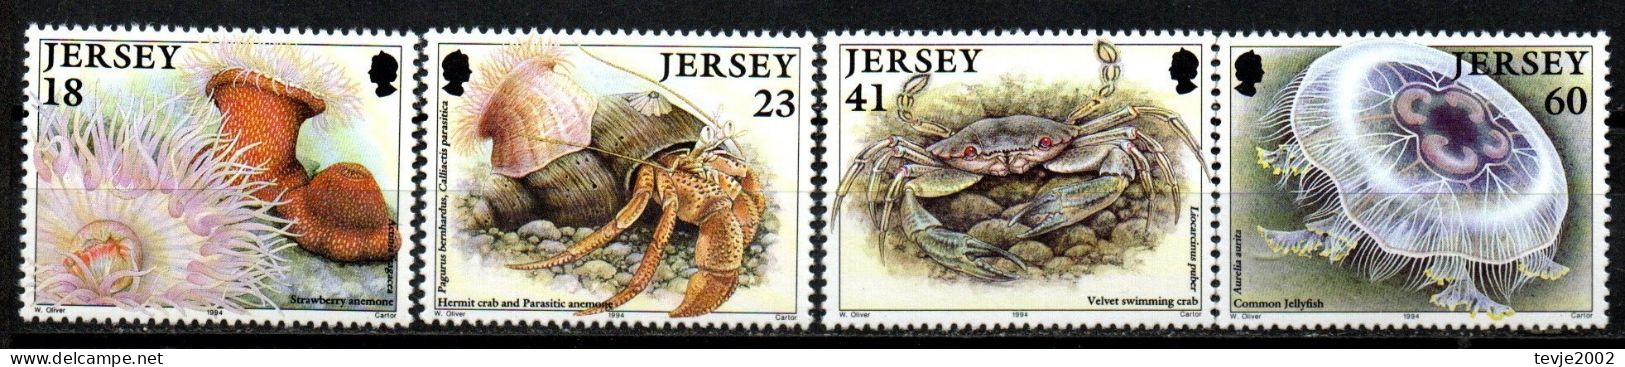 Jersey 1994 - Mi.Nr. 665 - 668 - Postfrisch MNH - Tiere Animals Krabben Crabs - Schalentiere